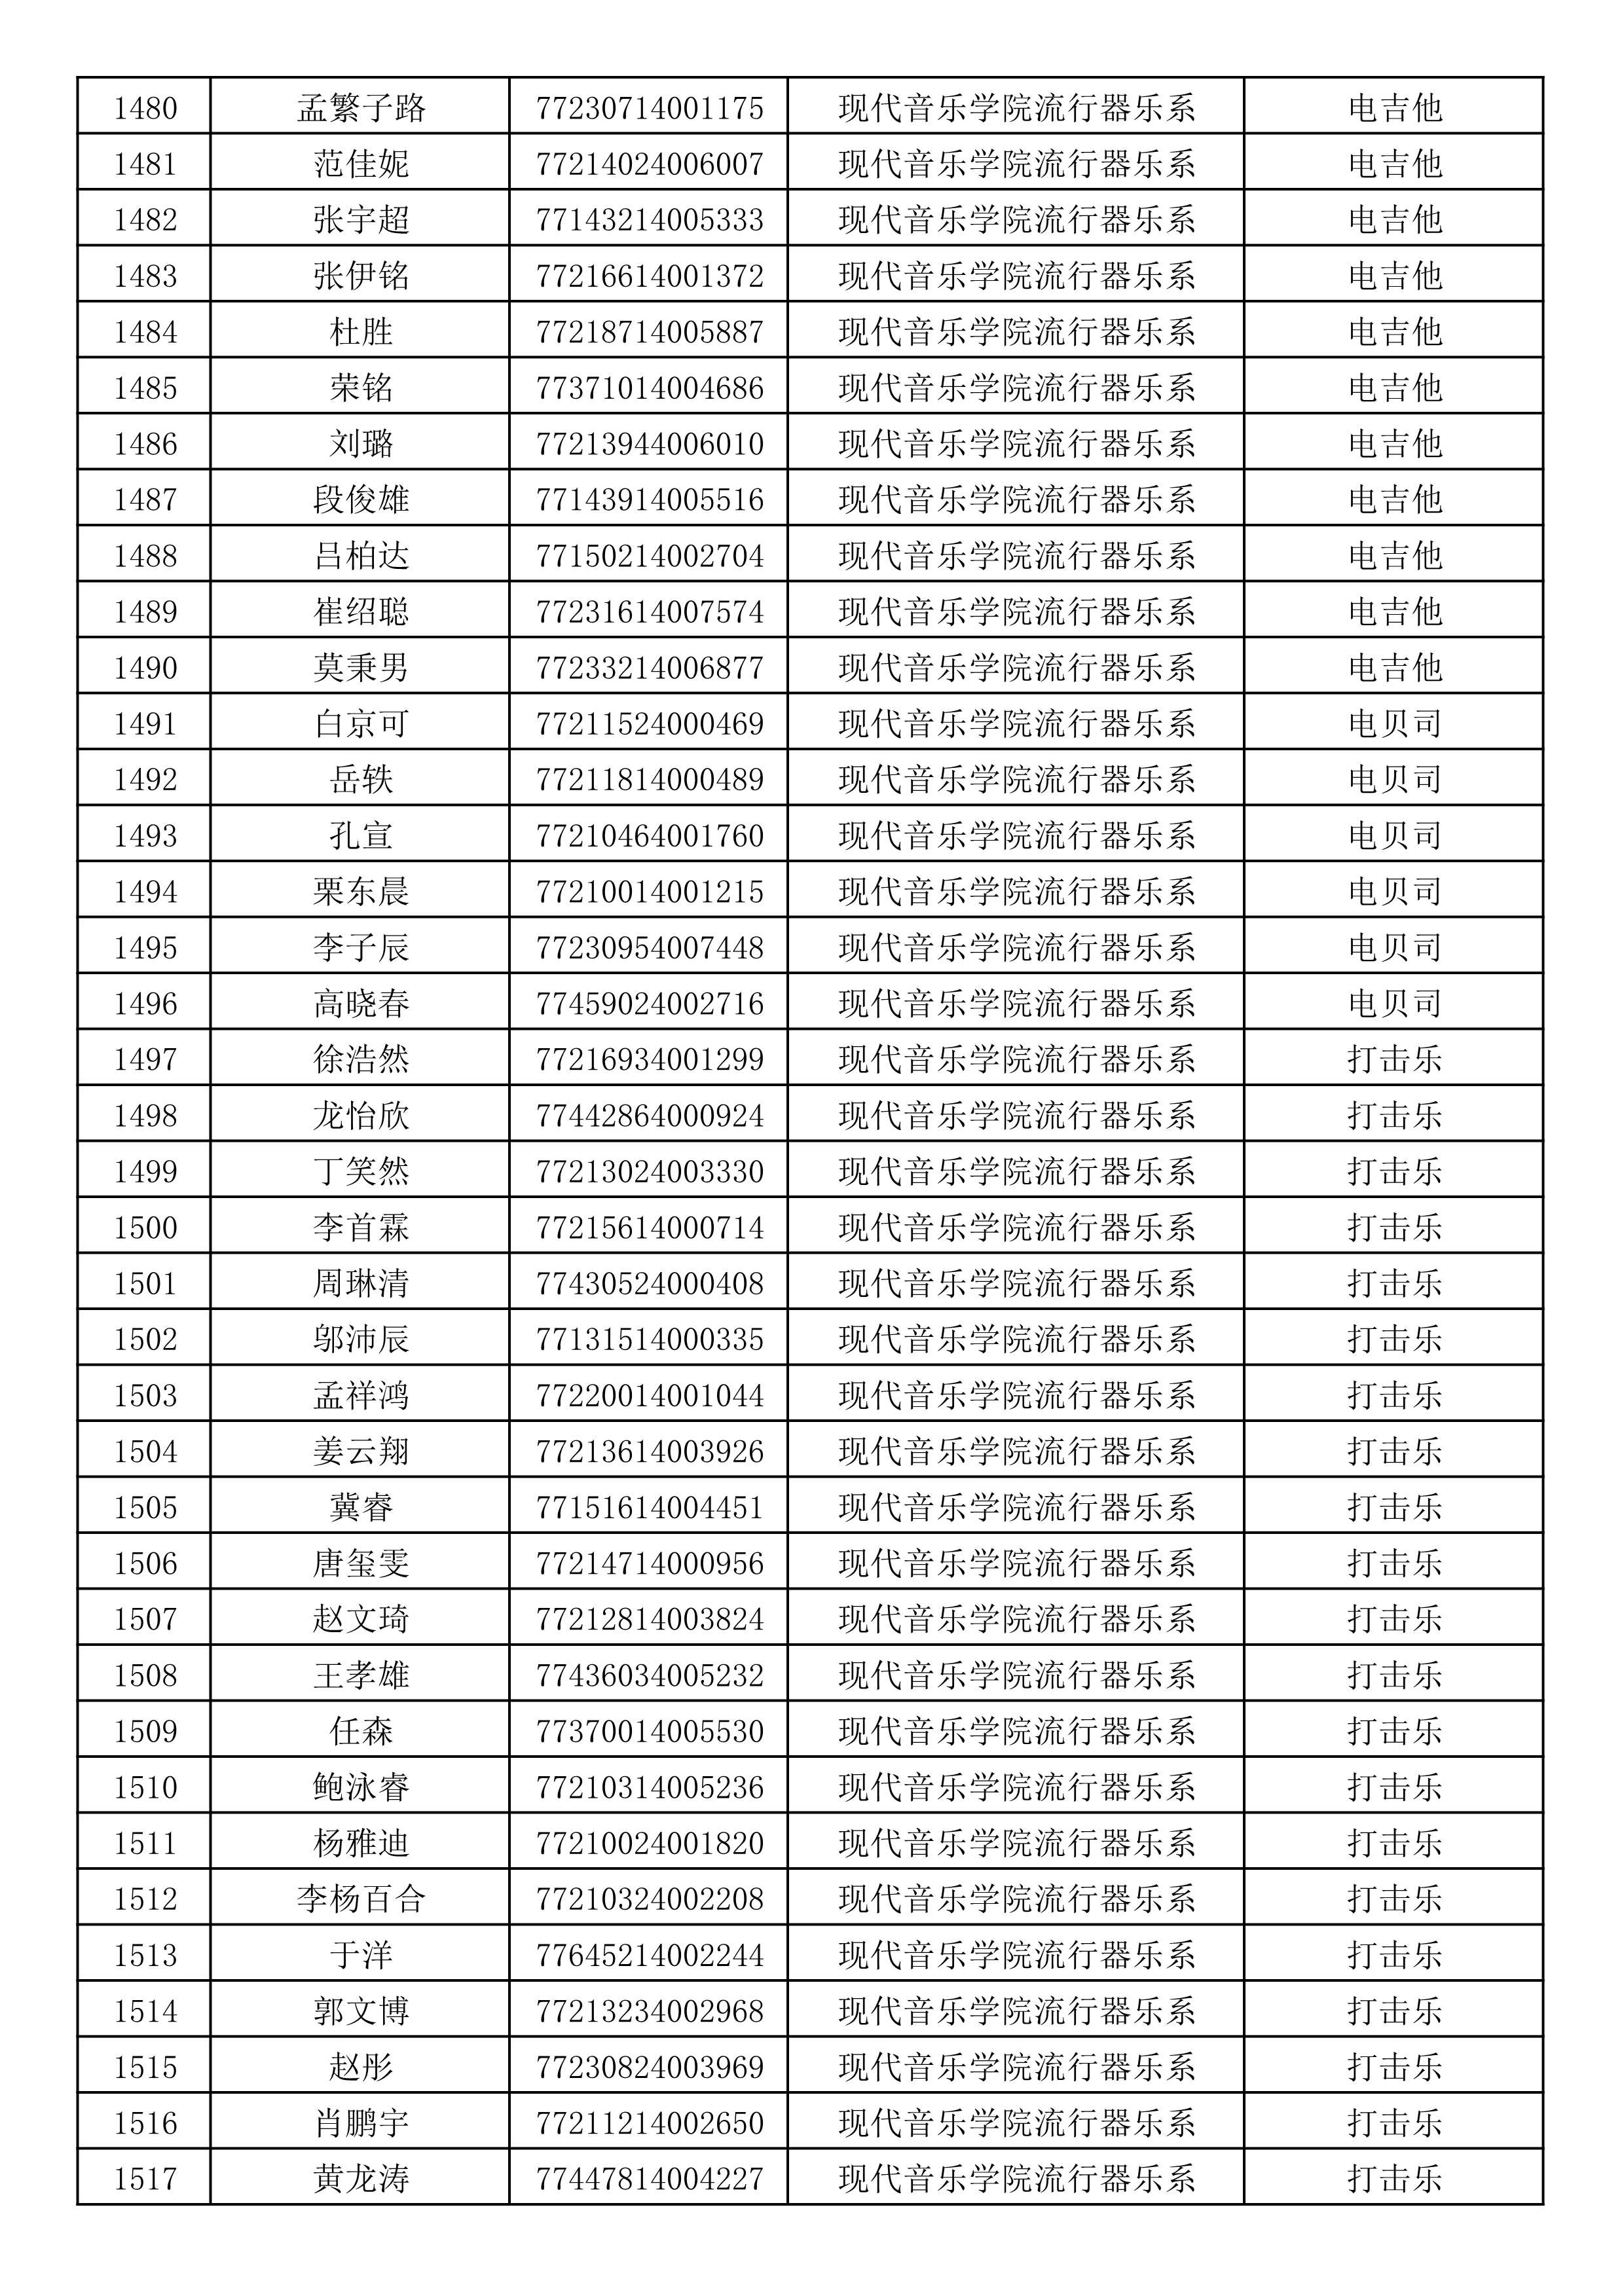 沈阳音乐学院2019年本科招生考试初试合格名单_40.jpg